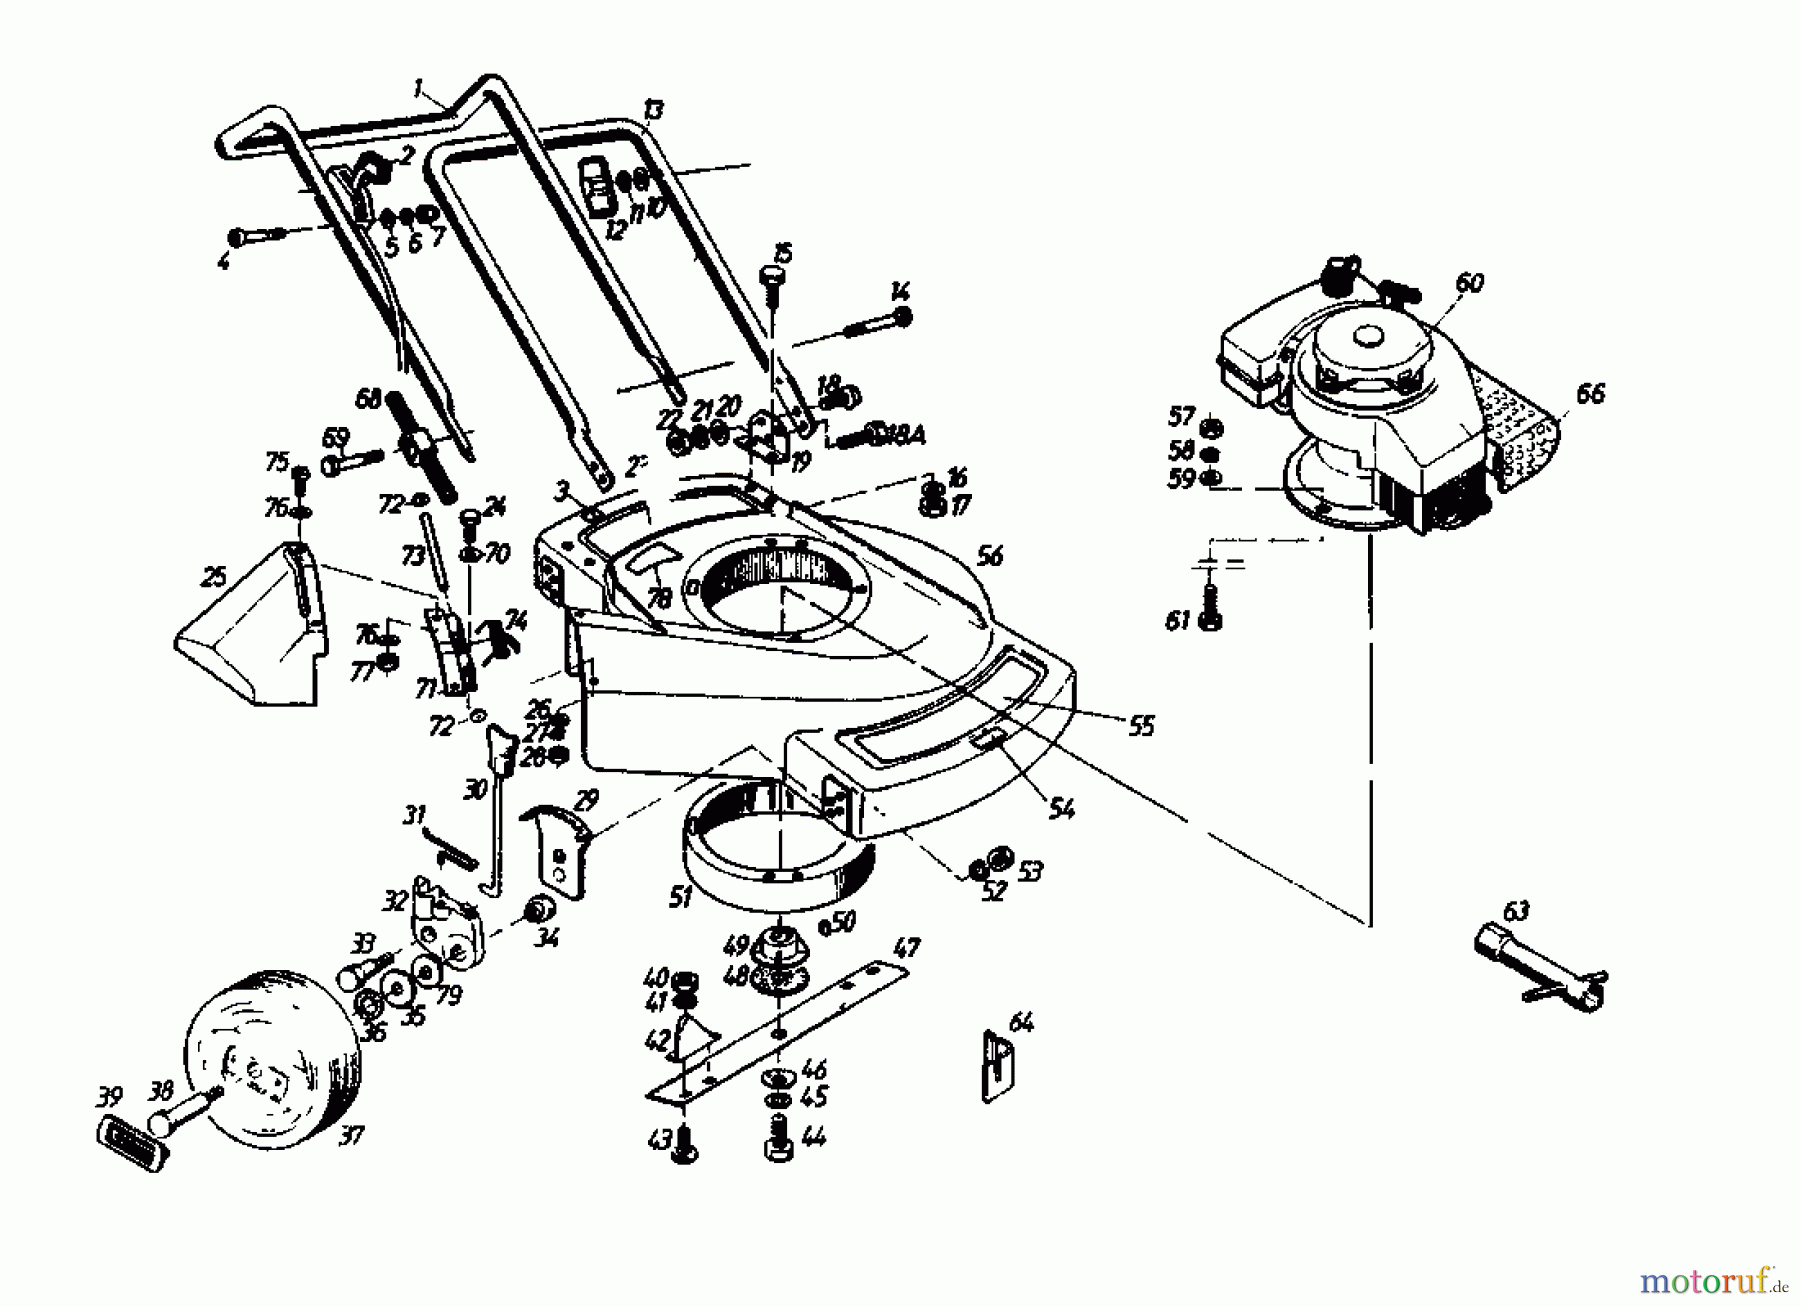  Gutbrod Tondeuse thermique 135 BL 2 T 02869.06  (1988) Machine de base